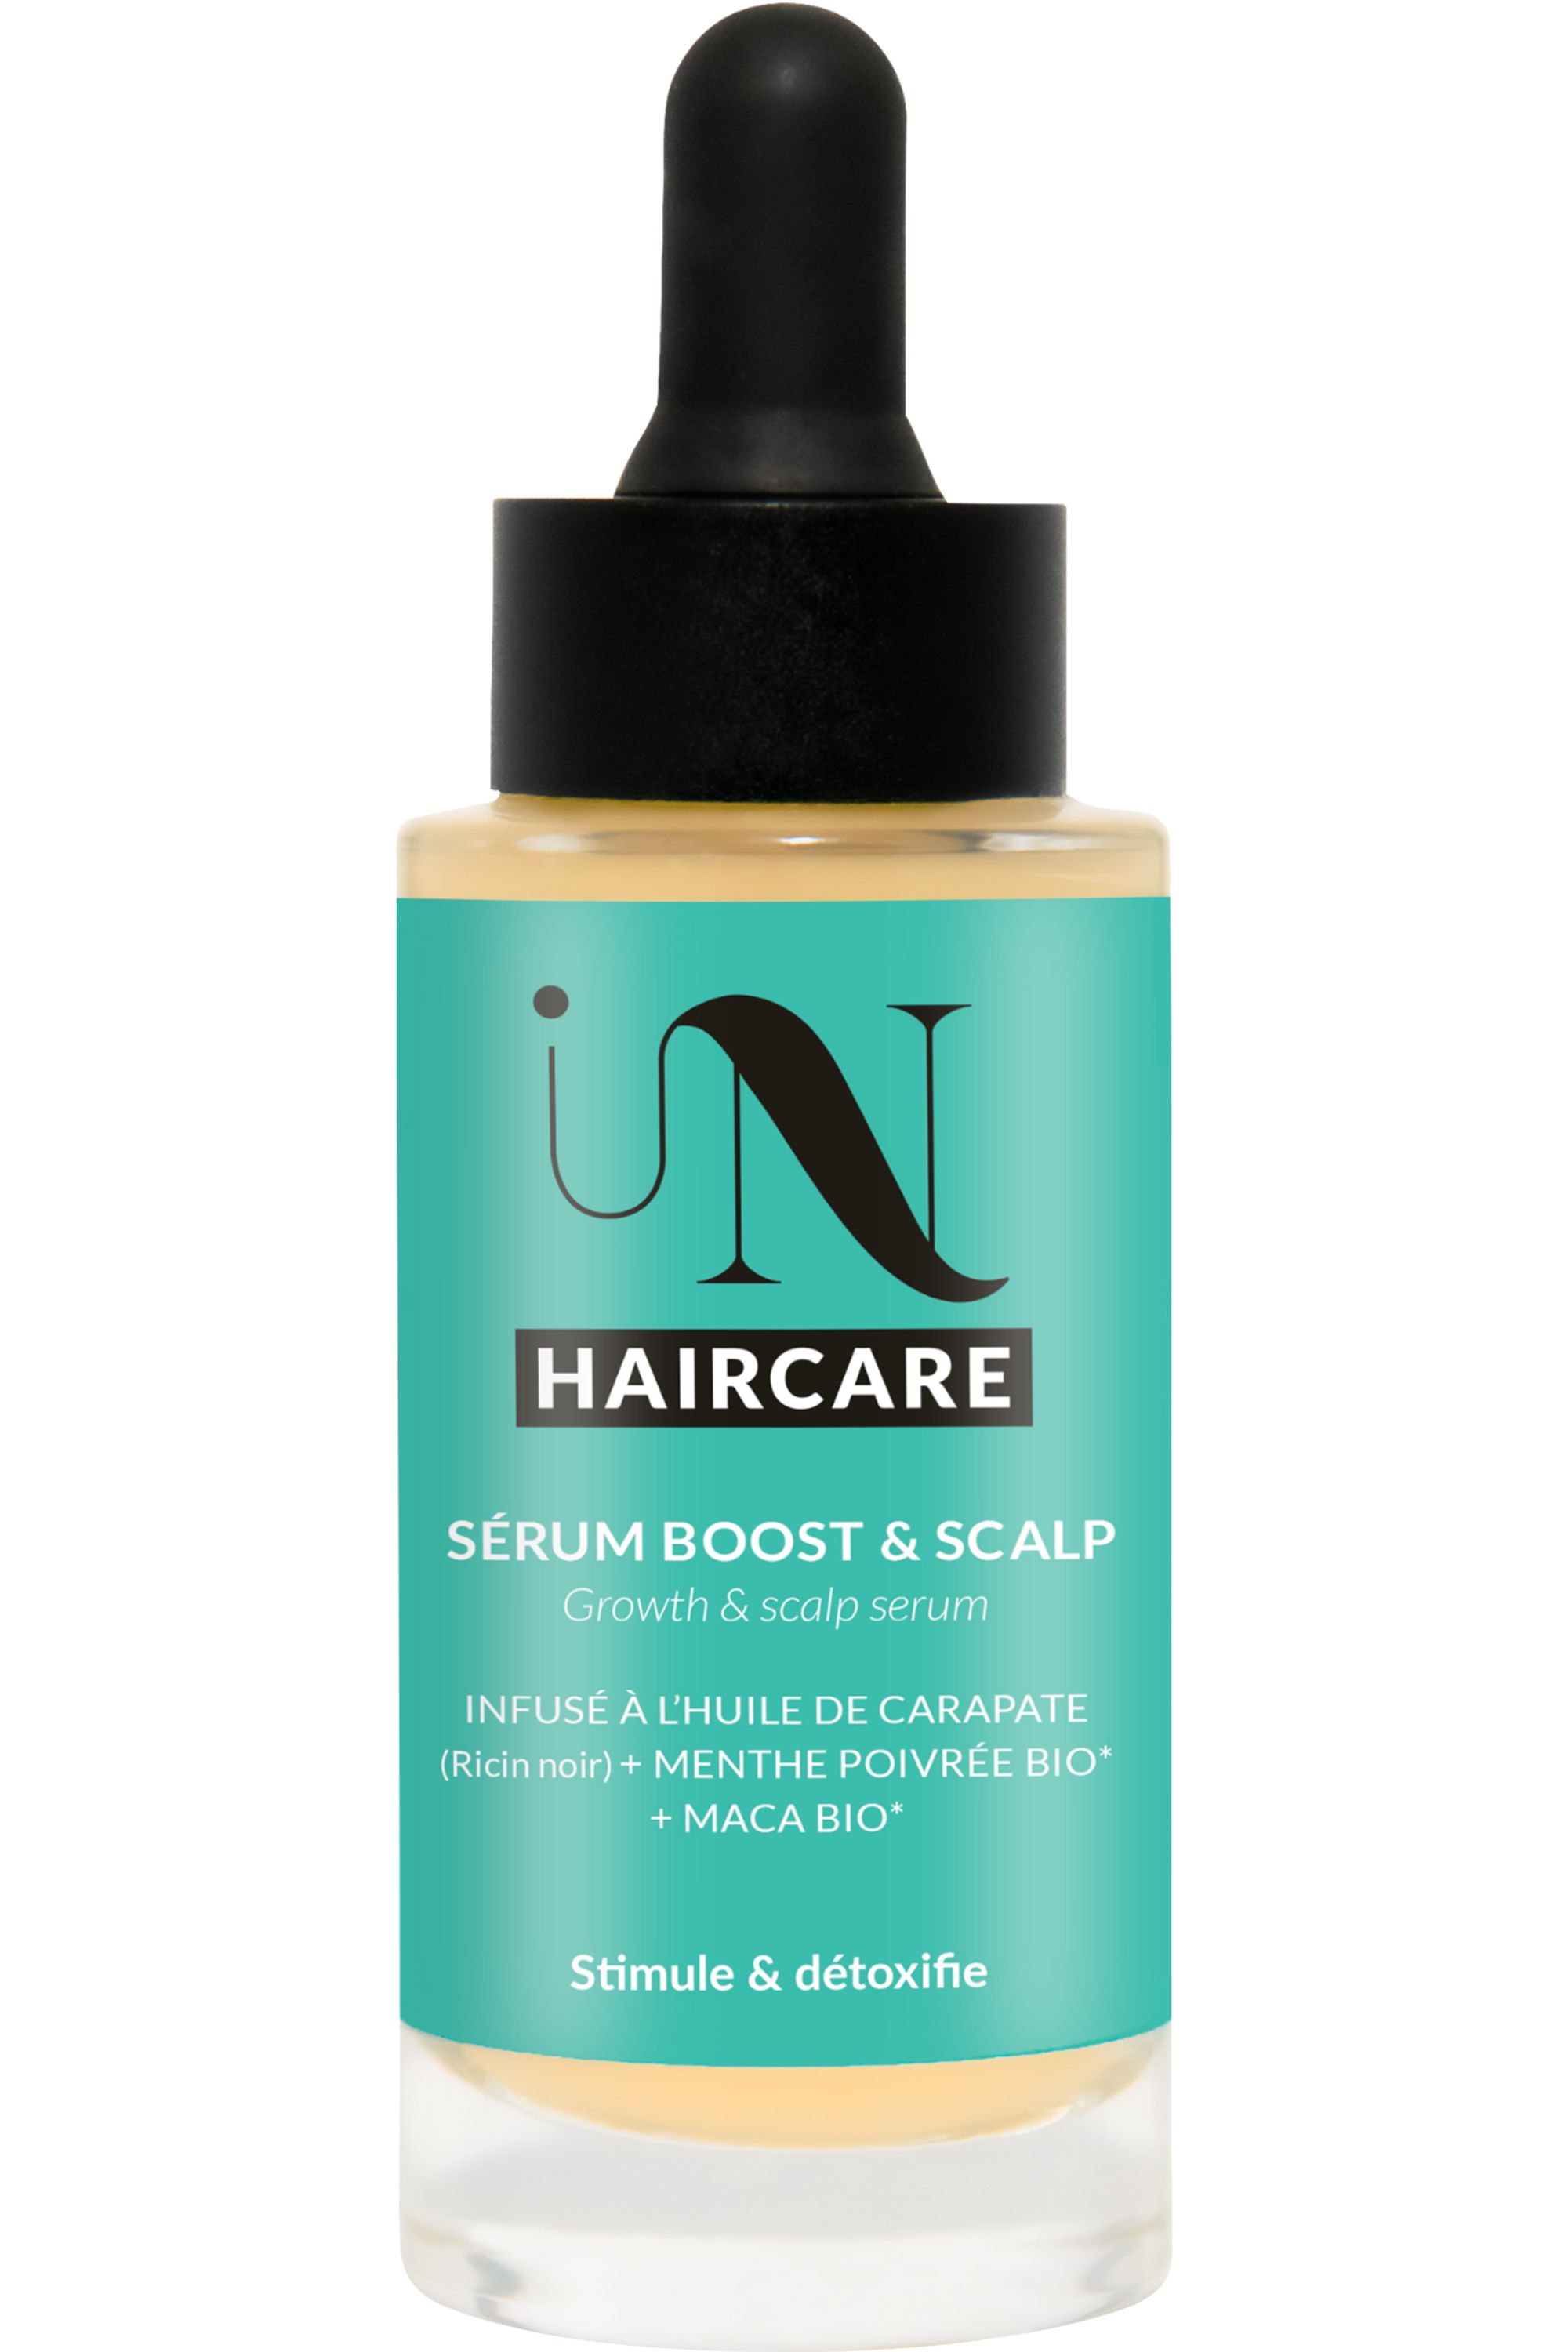 Brave New Hair - Spray racine fortifiant accélérateur de croissance -  Blissim